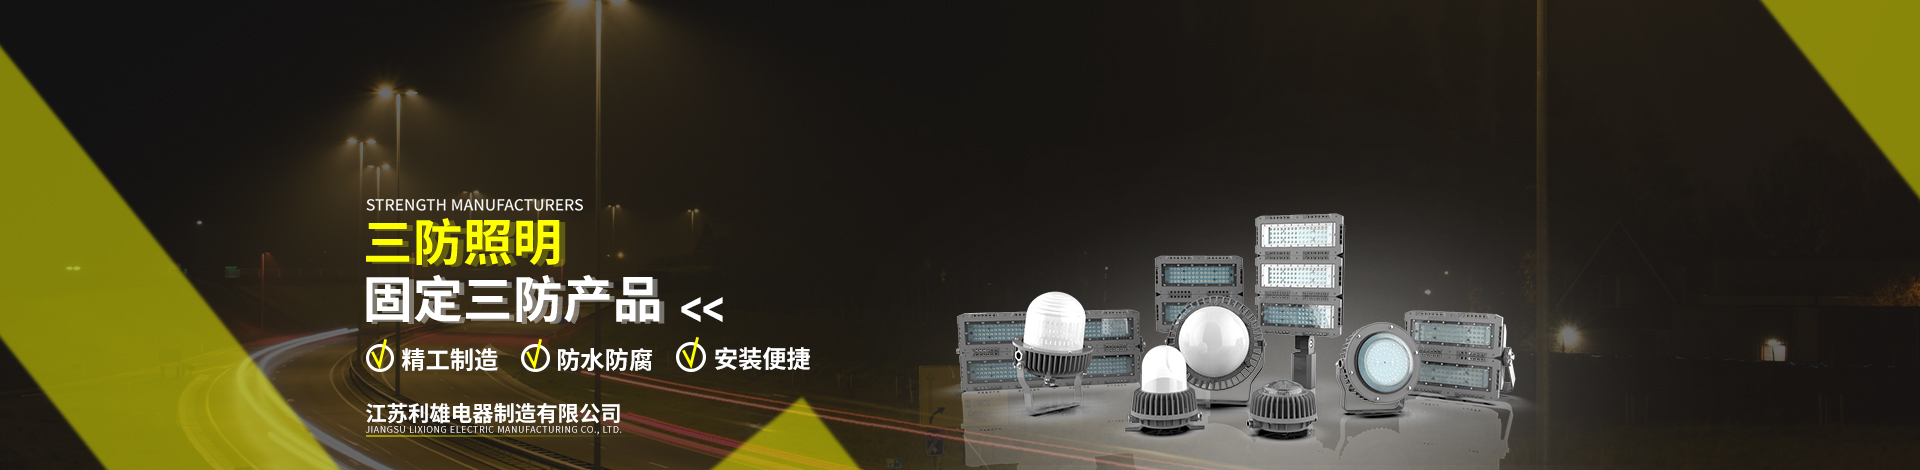 LED三防平臺燈類